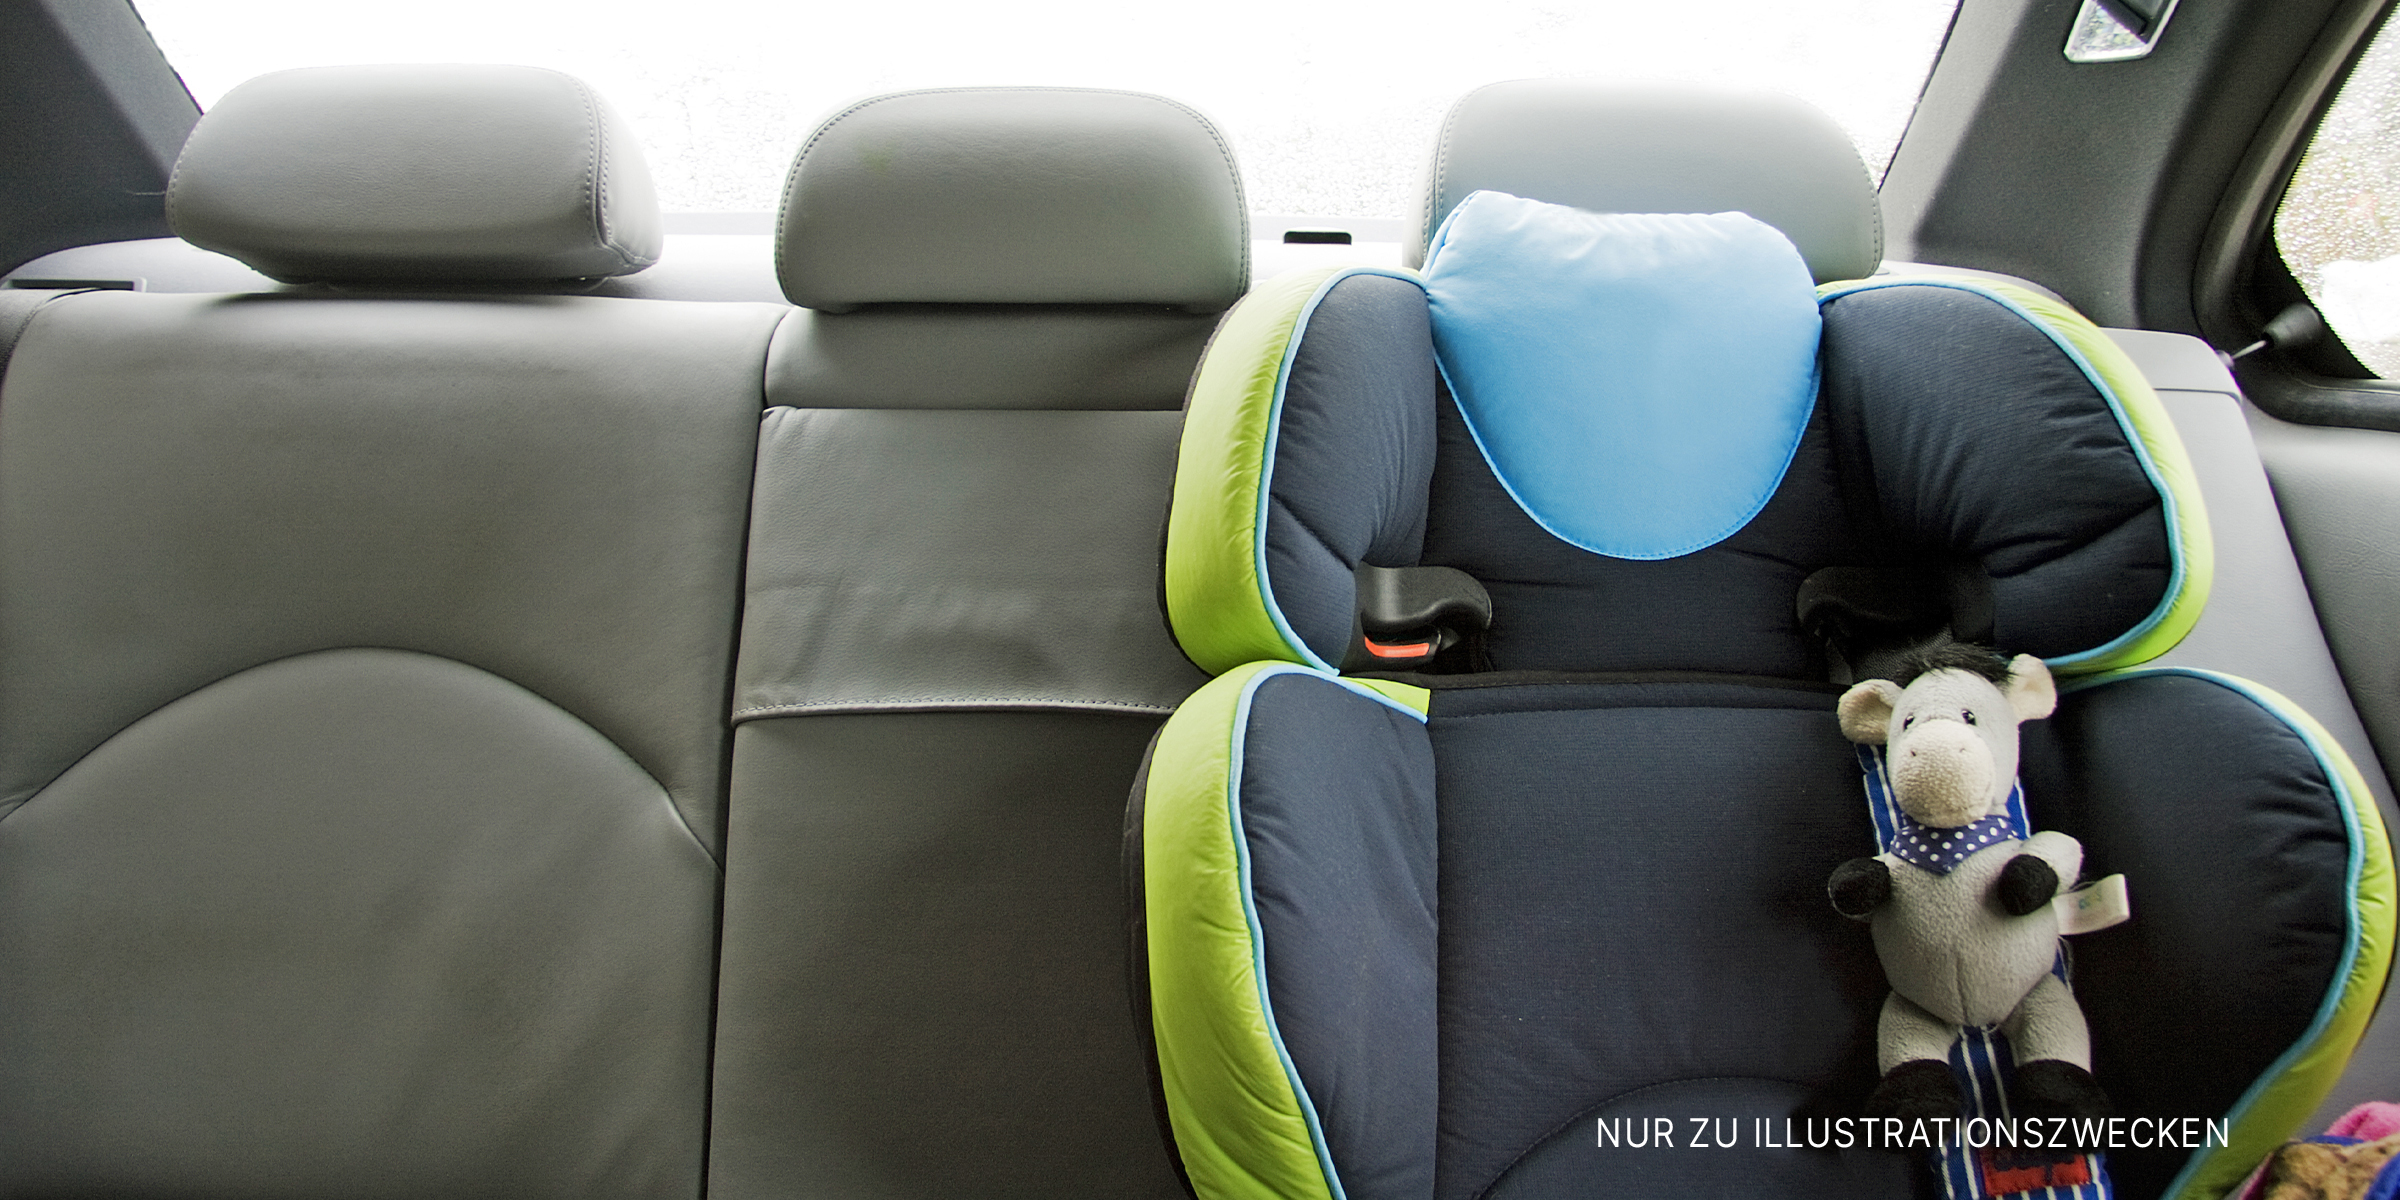 Leerer Kindersitz auf der Rückbank eines Autos | Quelle: Shutterstock